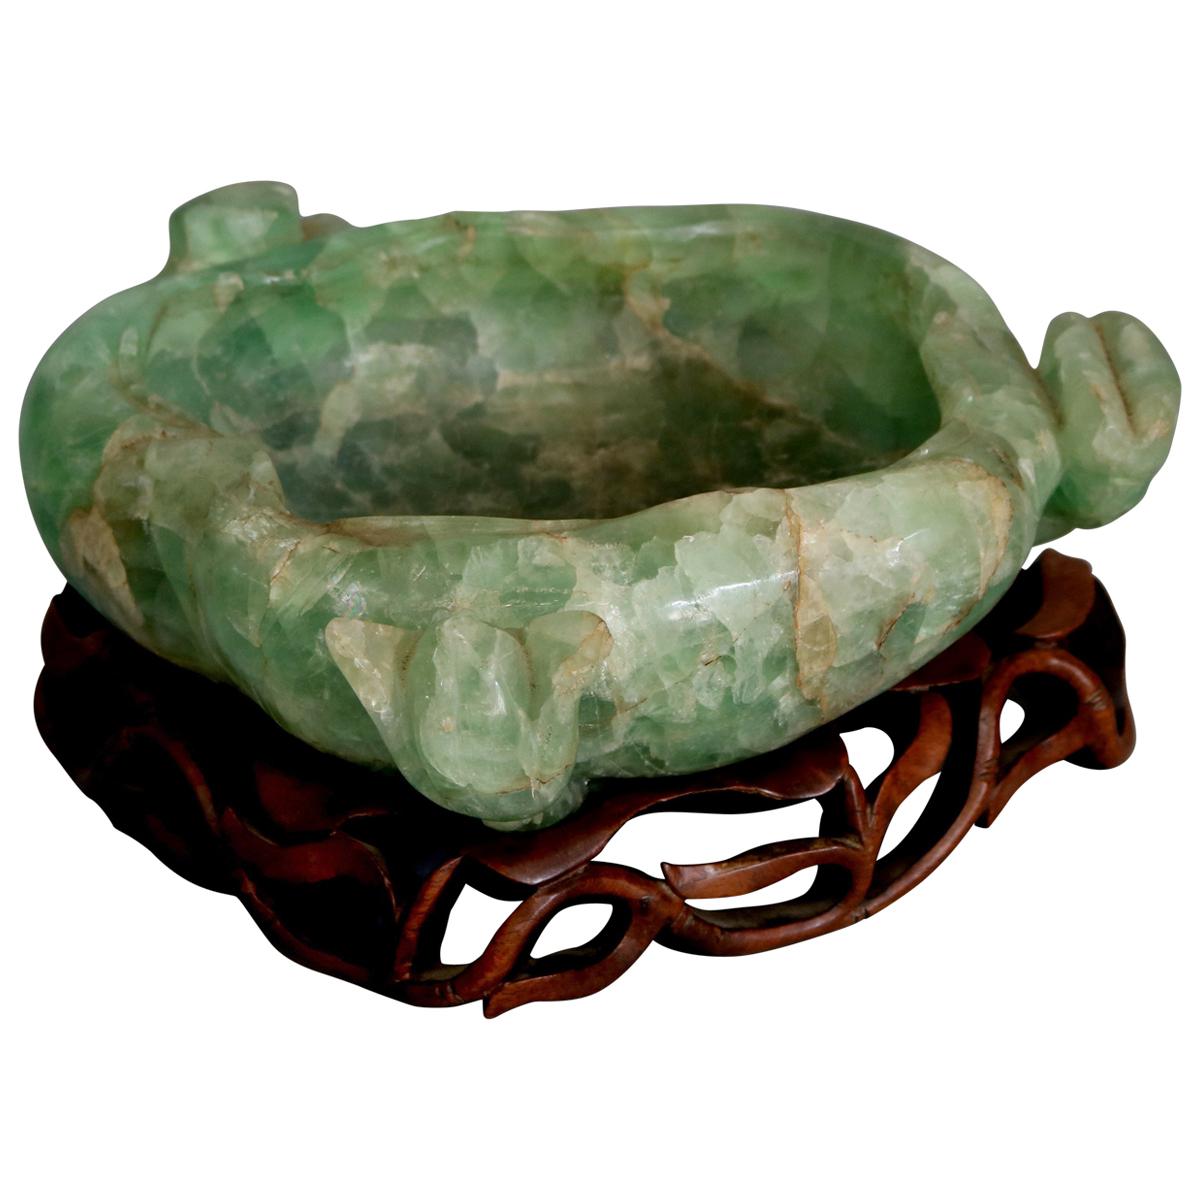 Large Antique Chinese Jadeite Gemstone Center Bowl on Carved Hardwood Base